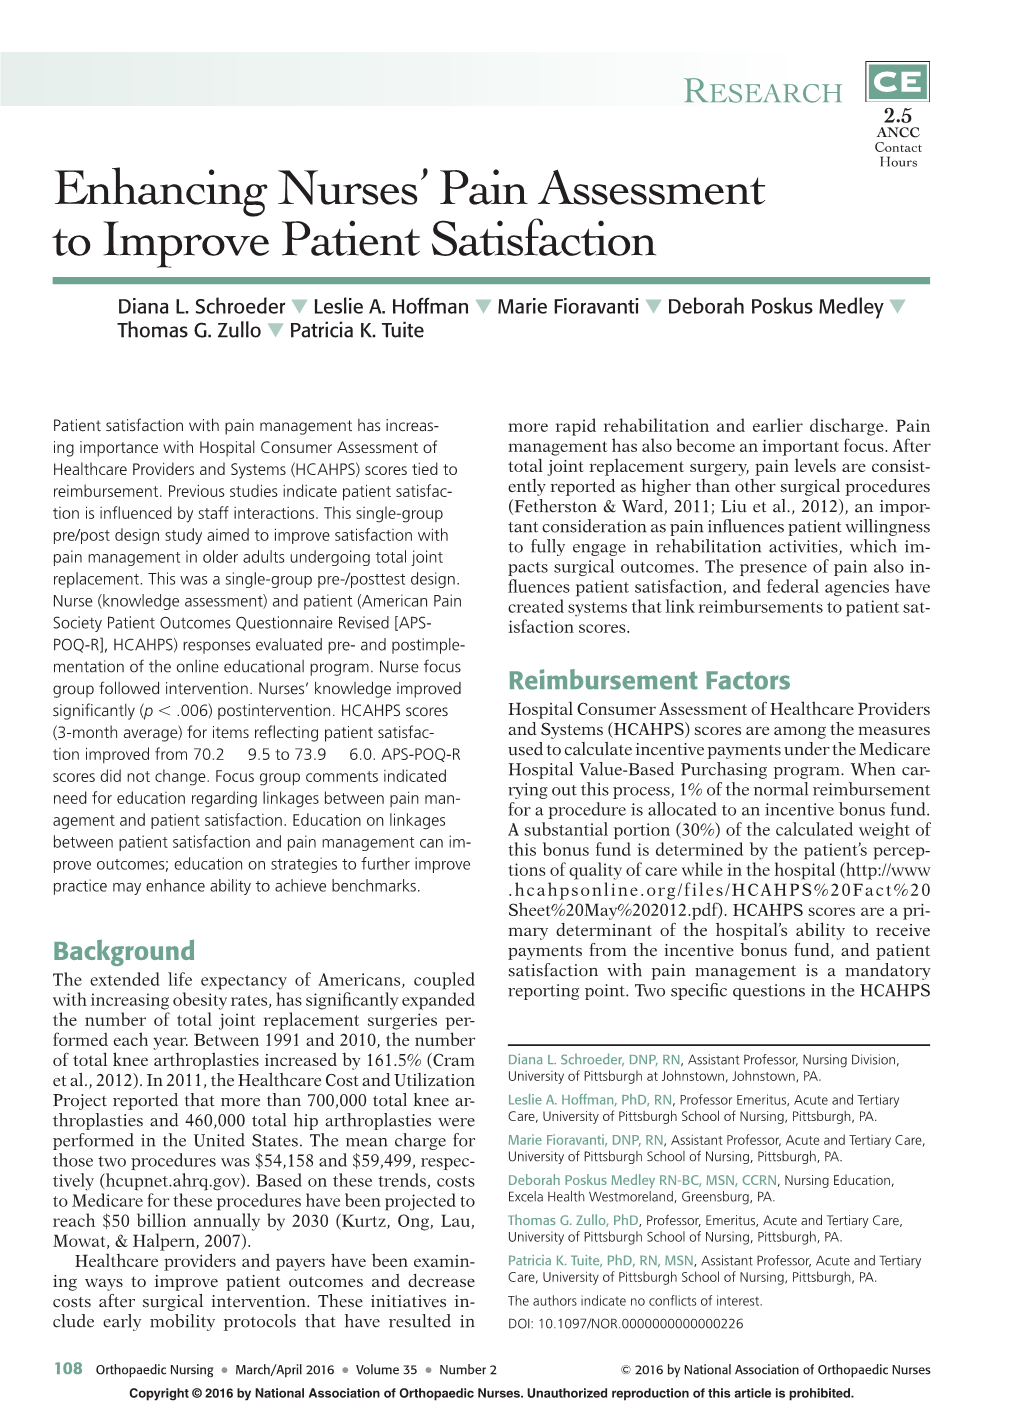 Enhancing Nurses' Pain Assessment to Improve Patient Satisfaction